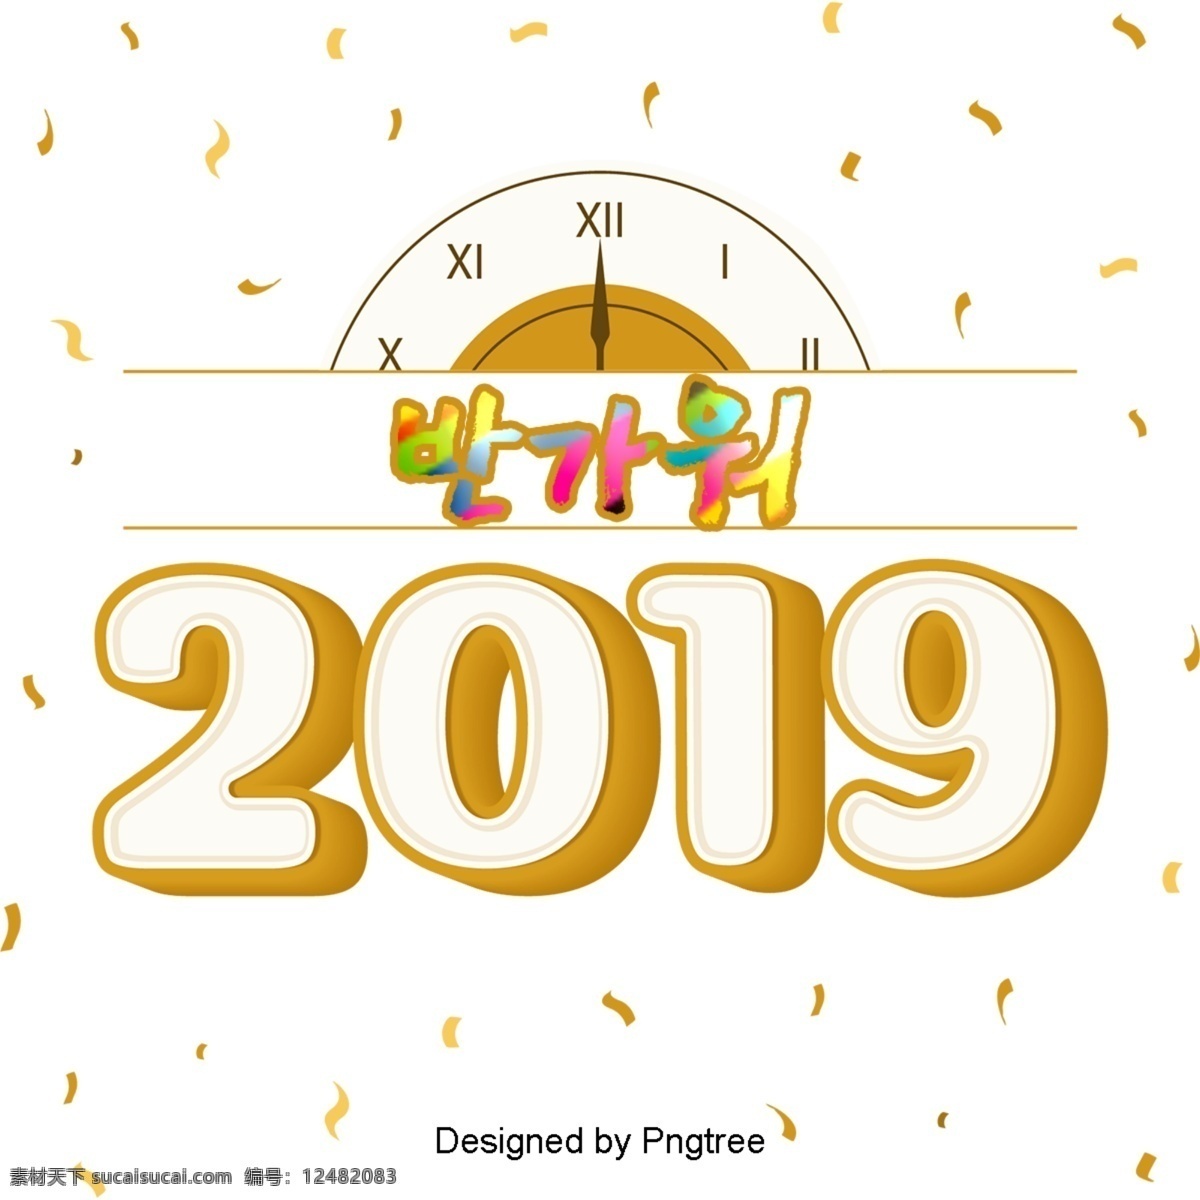 欢迎 来到 倒计时钟 希望 2019 色 黄色 字体 很高兴见到你 祝你新年快乐 看 祝贺 字形 倒计时